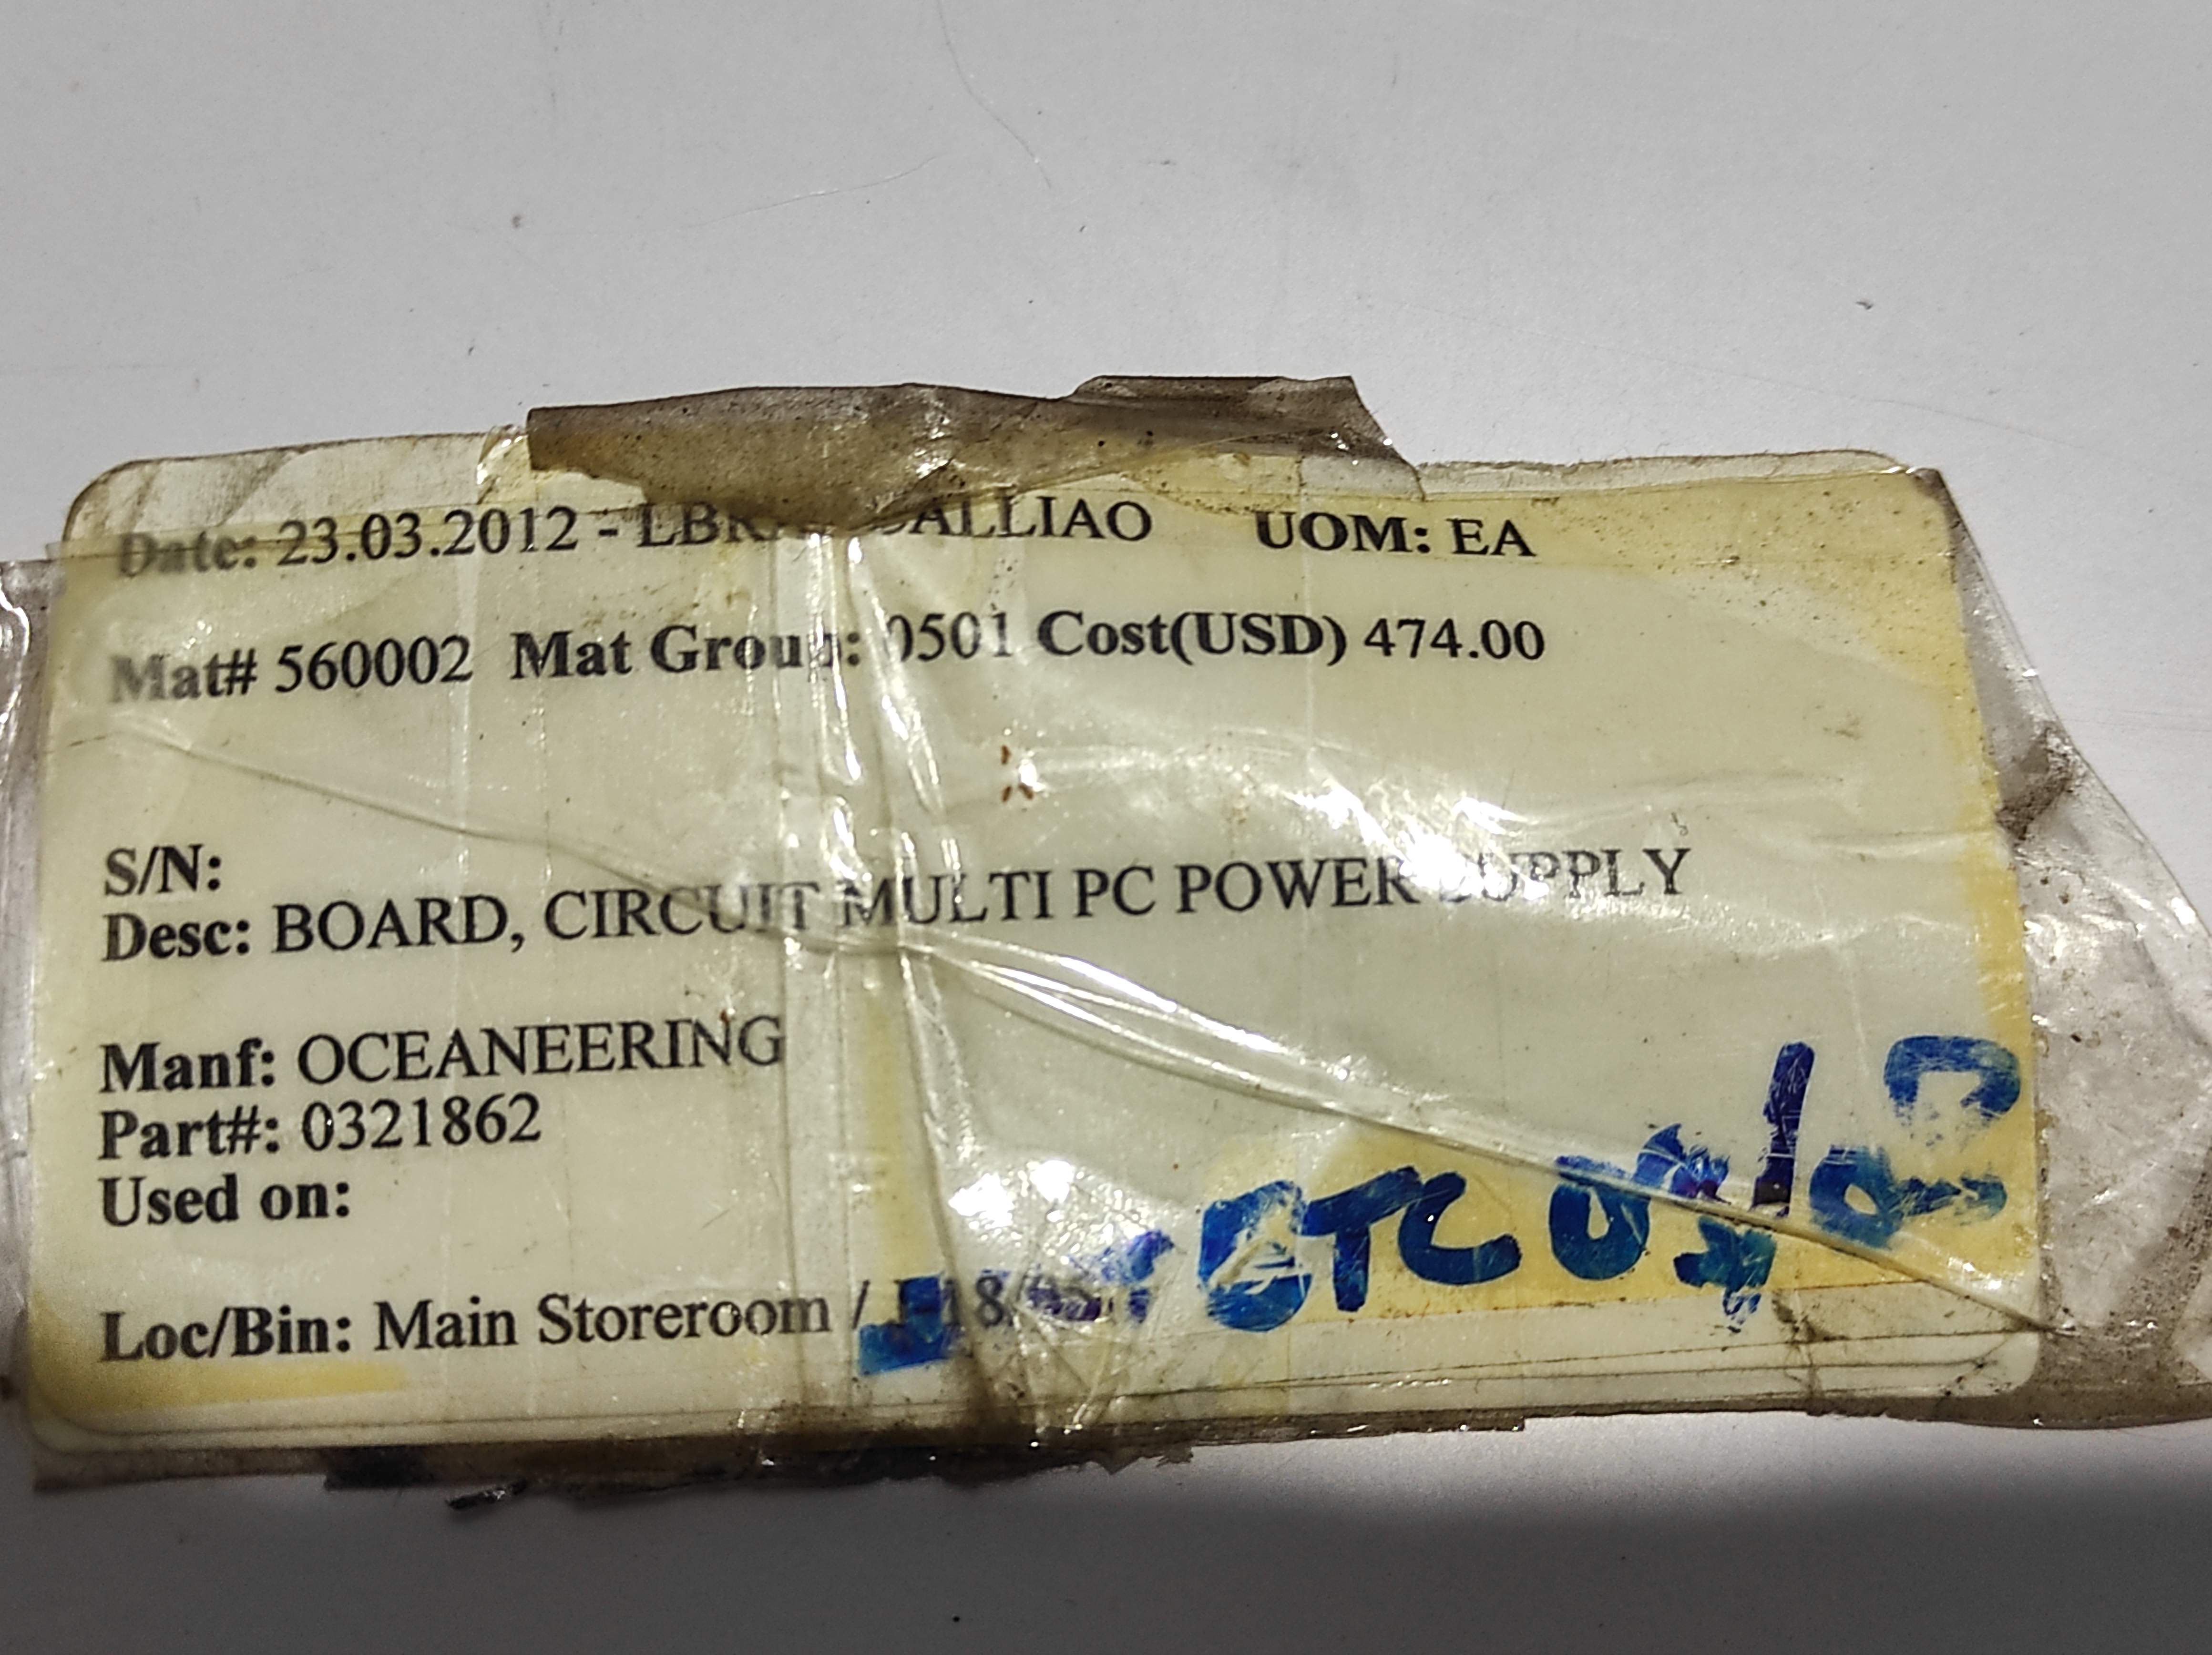 Oceaneering 0321862 Circuit Multi PC Power Supply Board